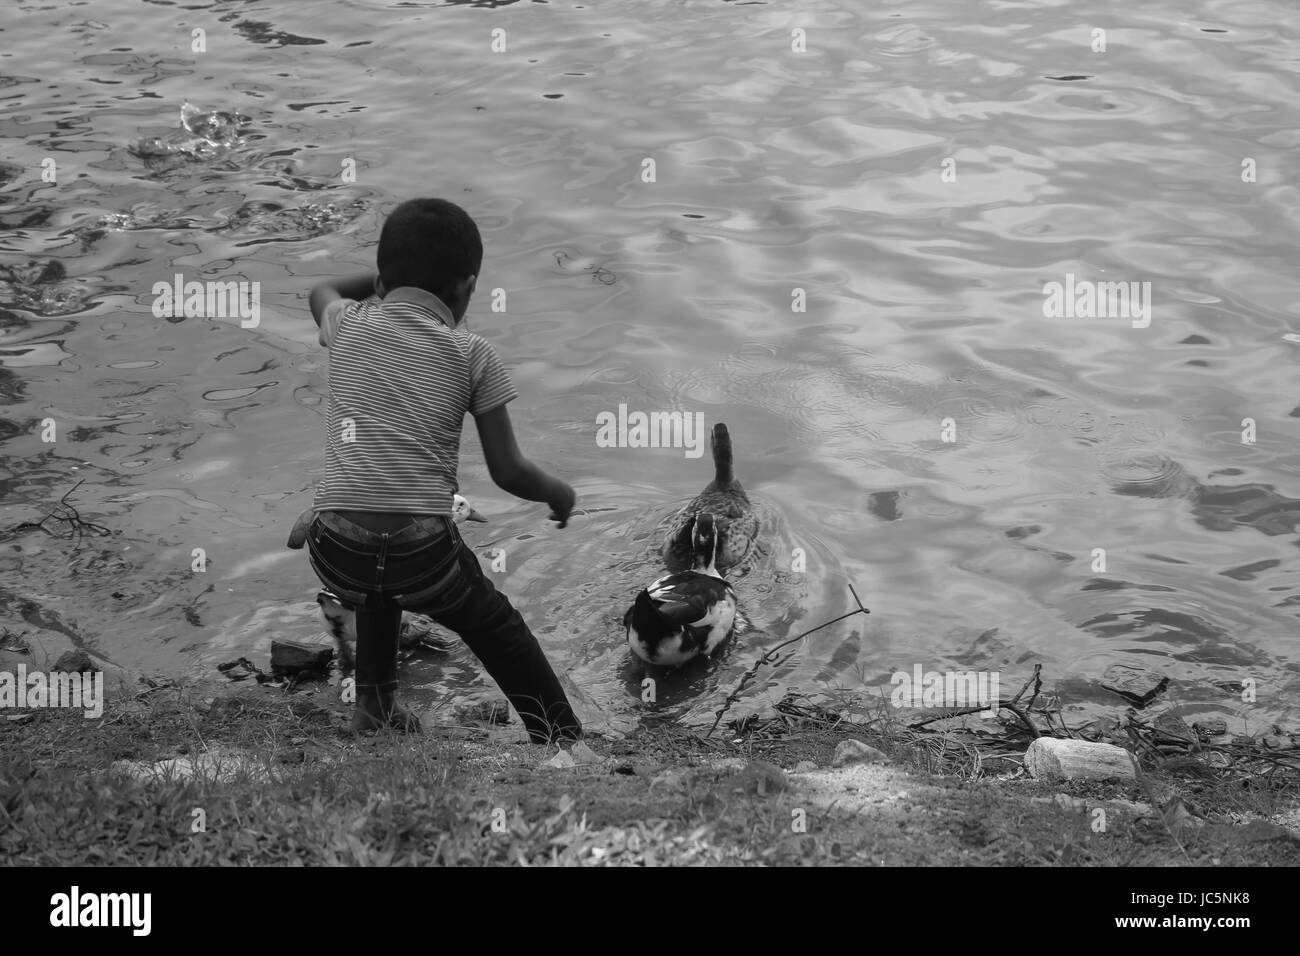 Jeune enfant tendant la main aux canards dans l'eau Banque D'Images